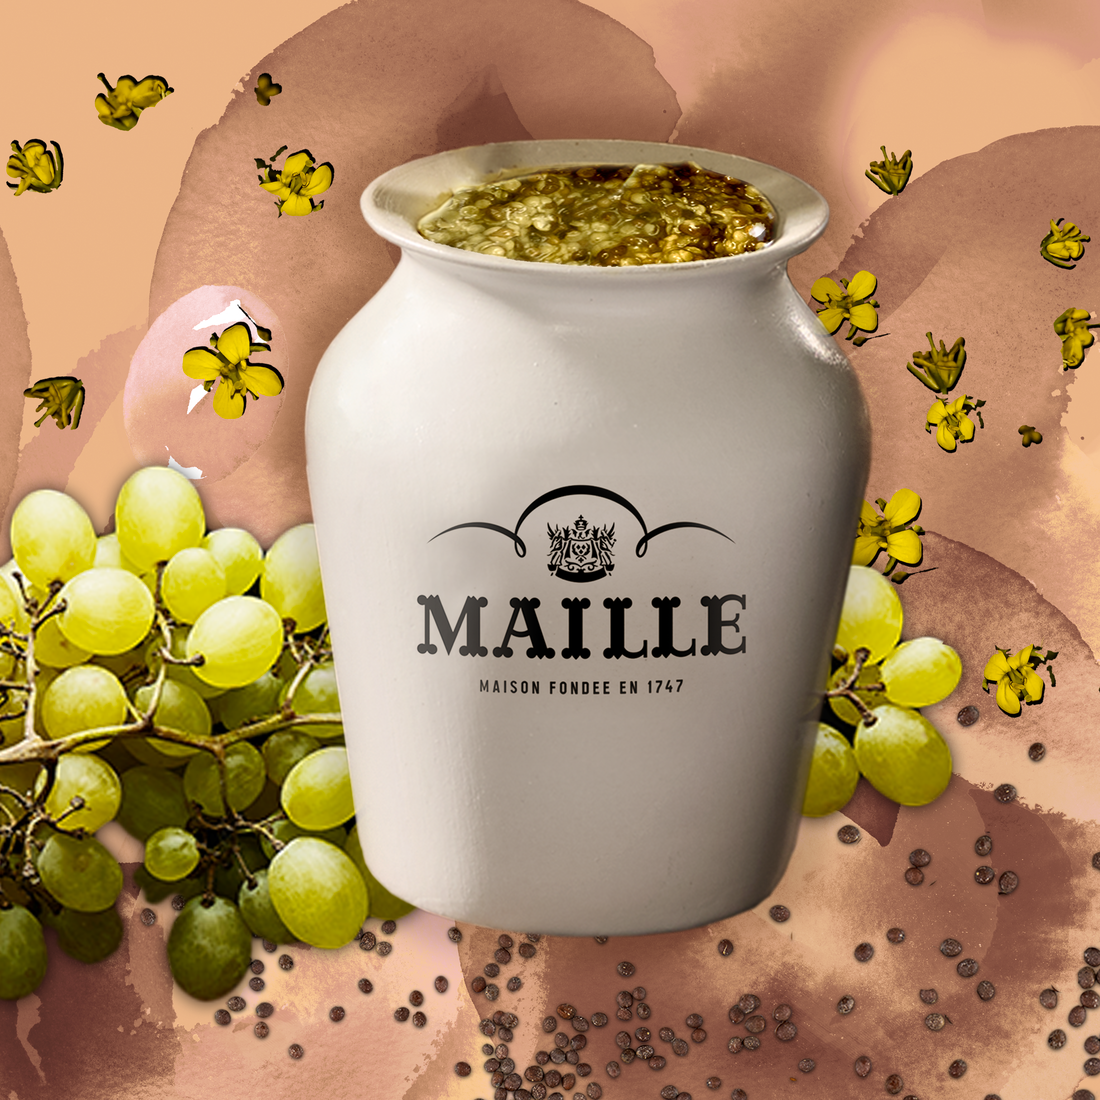 Maille - Moutarde a l'Ancienne au chardonnay de bourgogne servie a la pompe, new visual